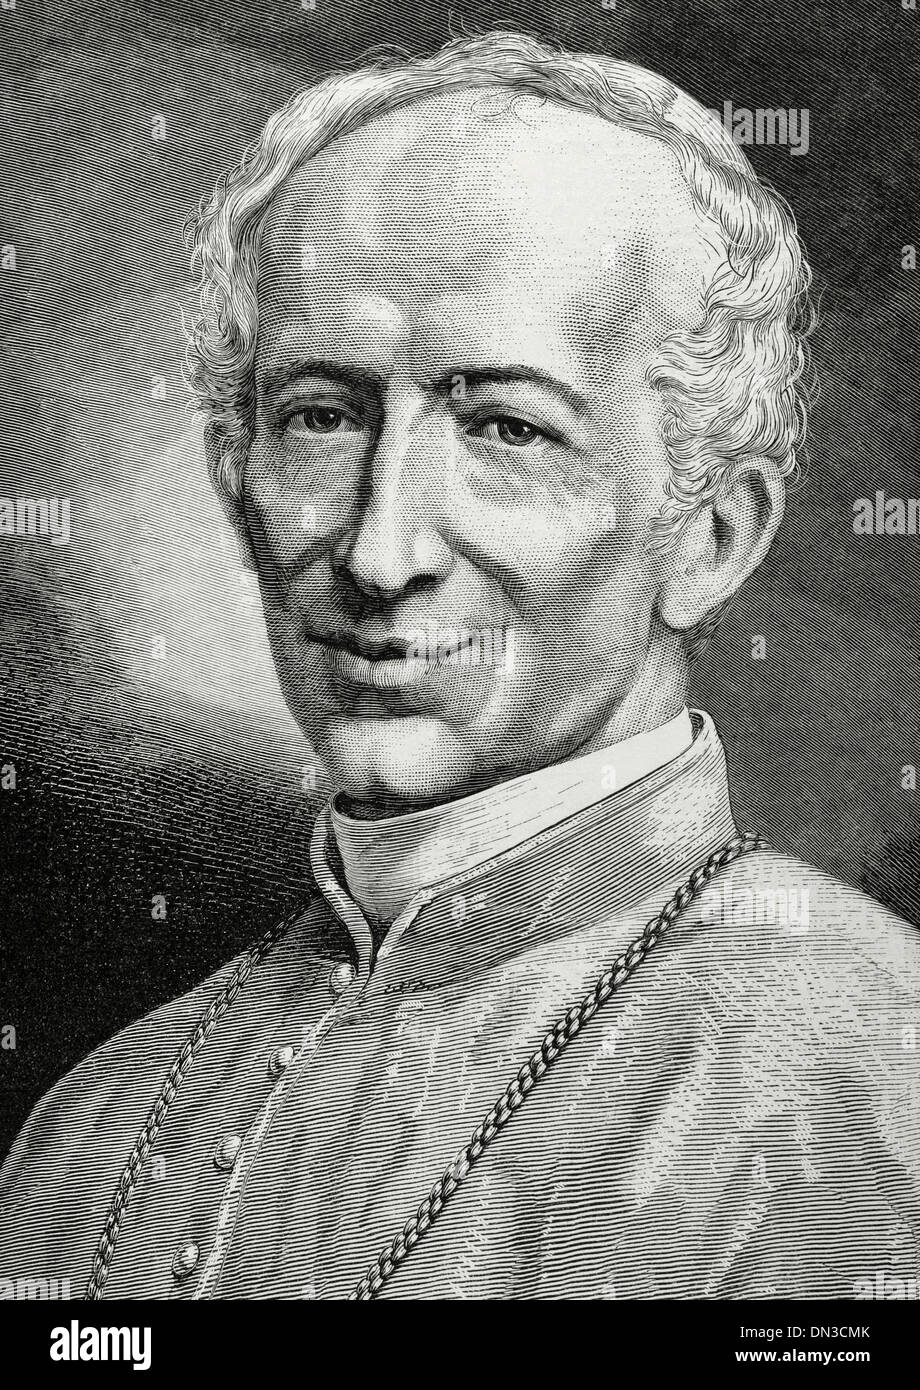 Leo XIII (1810-1903). Italienische Papst (1878 – 1903), namens Vincenzo Gioacchino Pecci. Almanach der Illustration, 1879. Gravur. Stockfoto